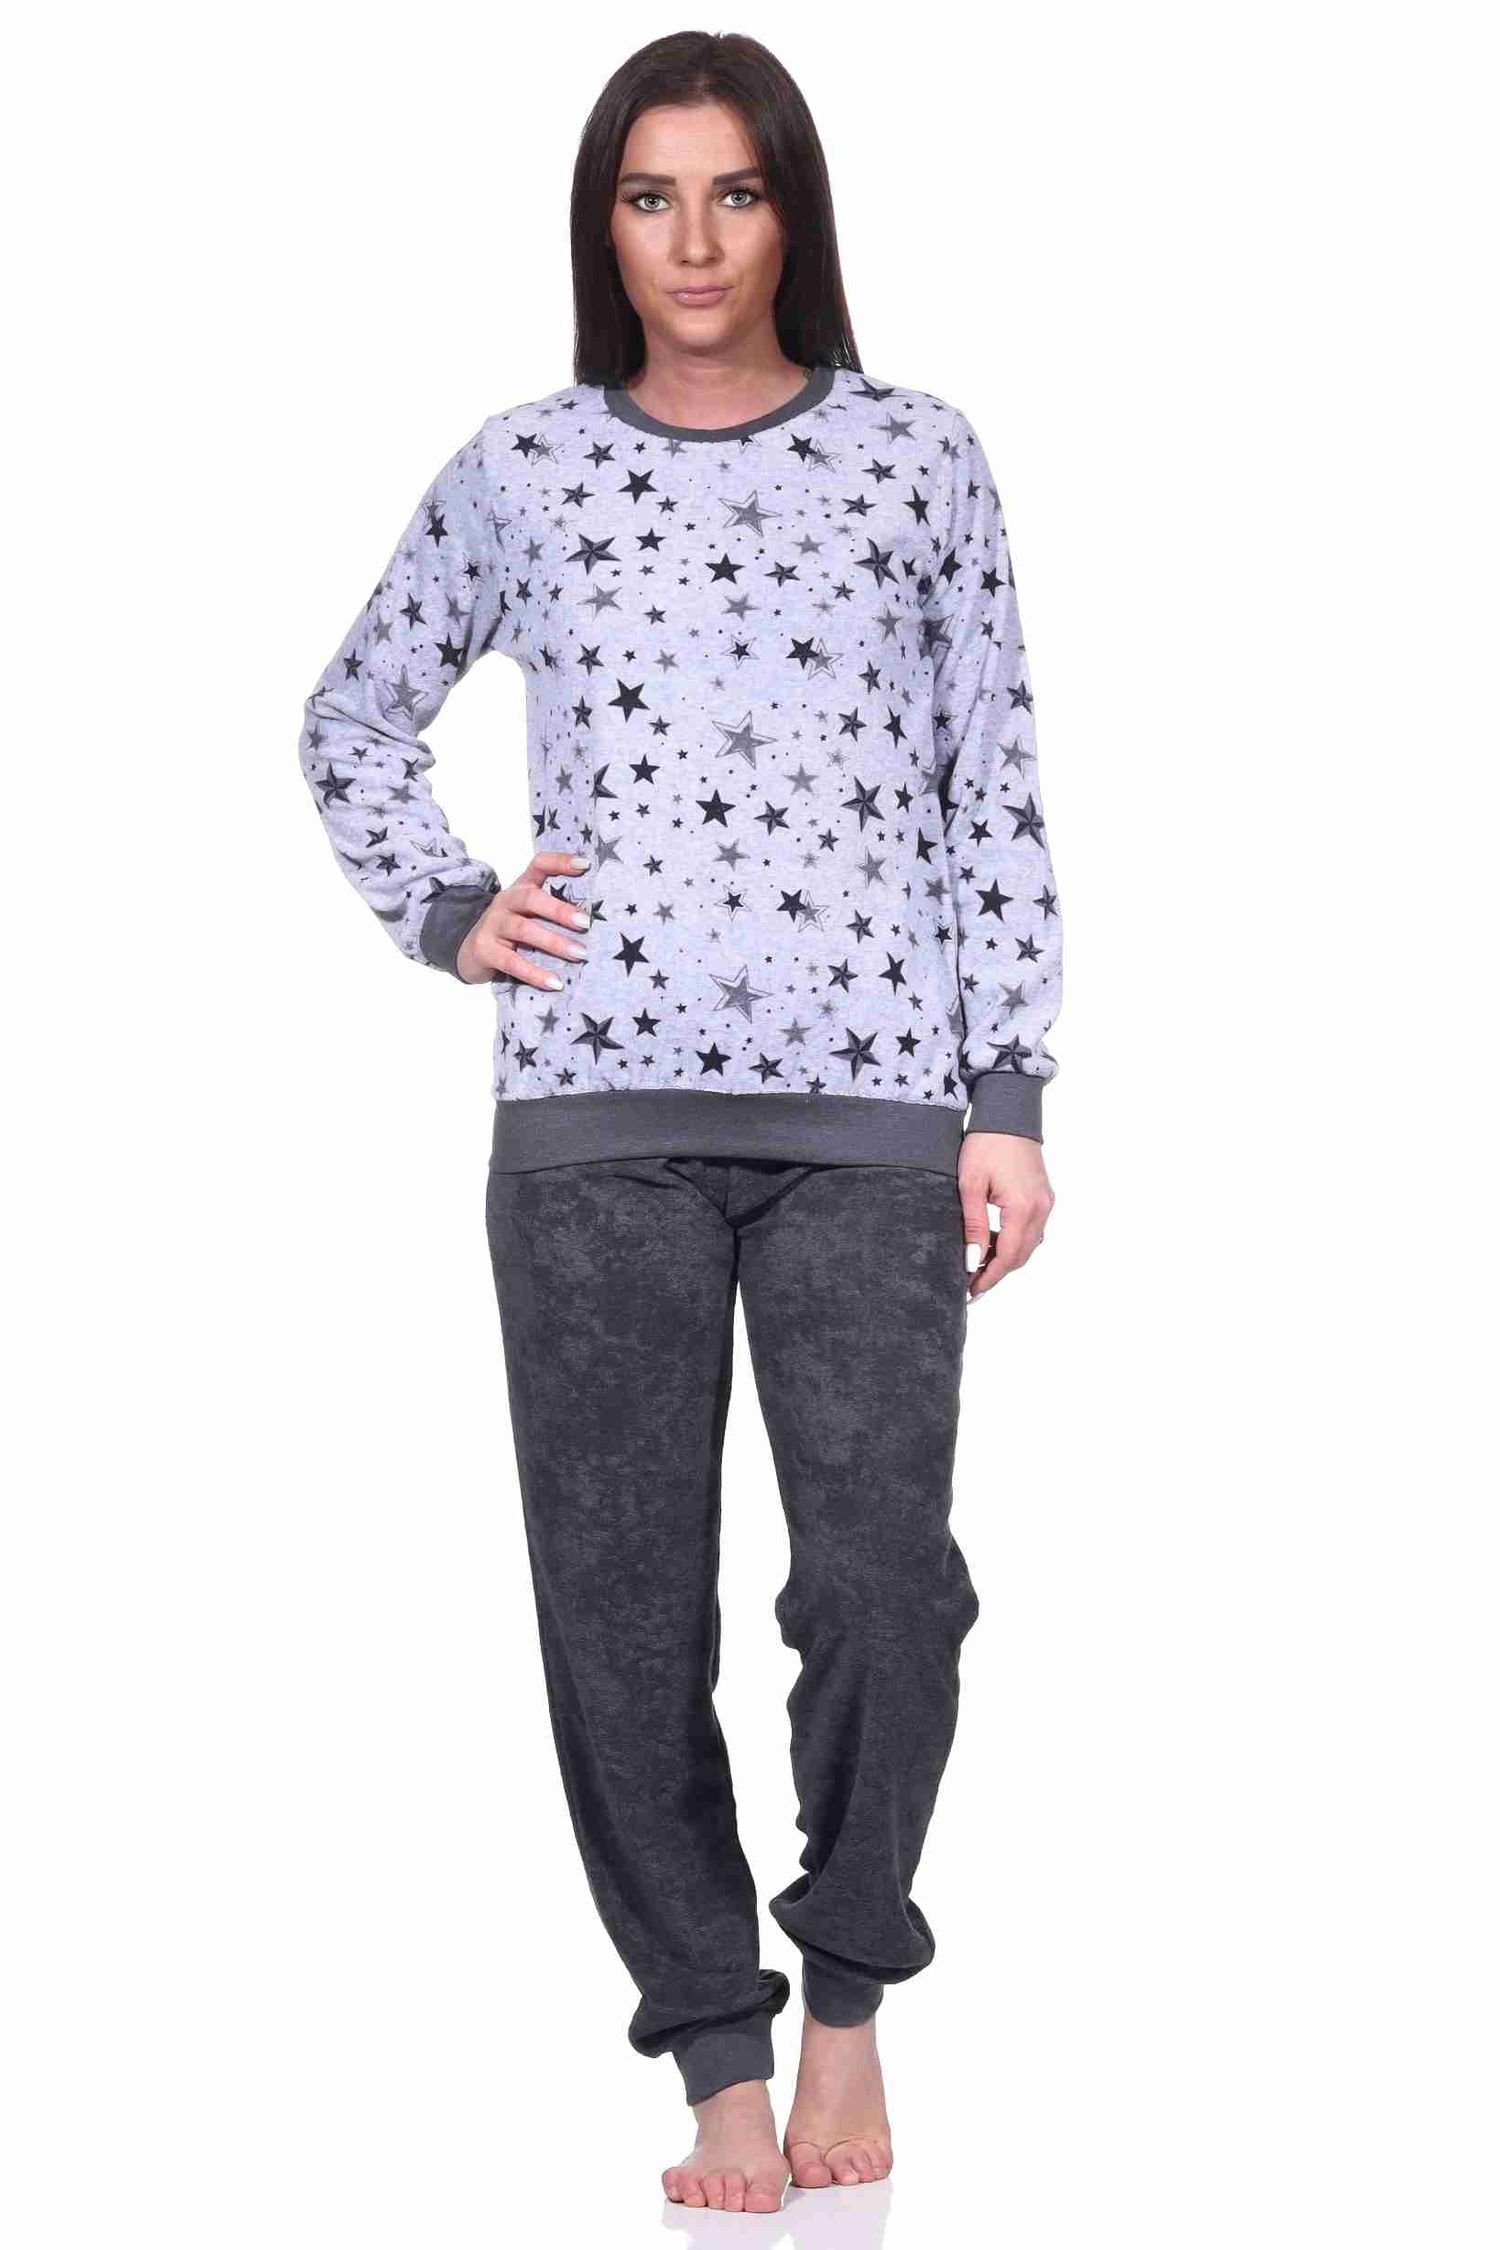 Pyjama Bündchen Frottee mit grau-melange Damen Sterne Schlafanzug Design in edlen Normann